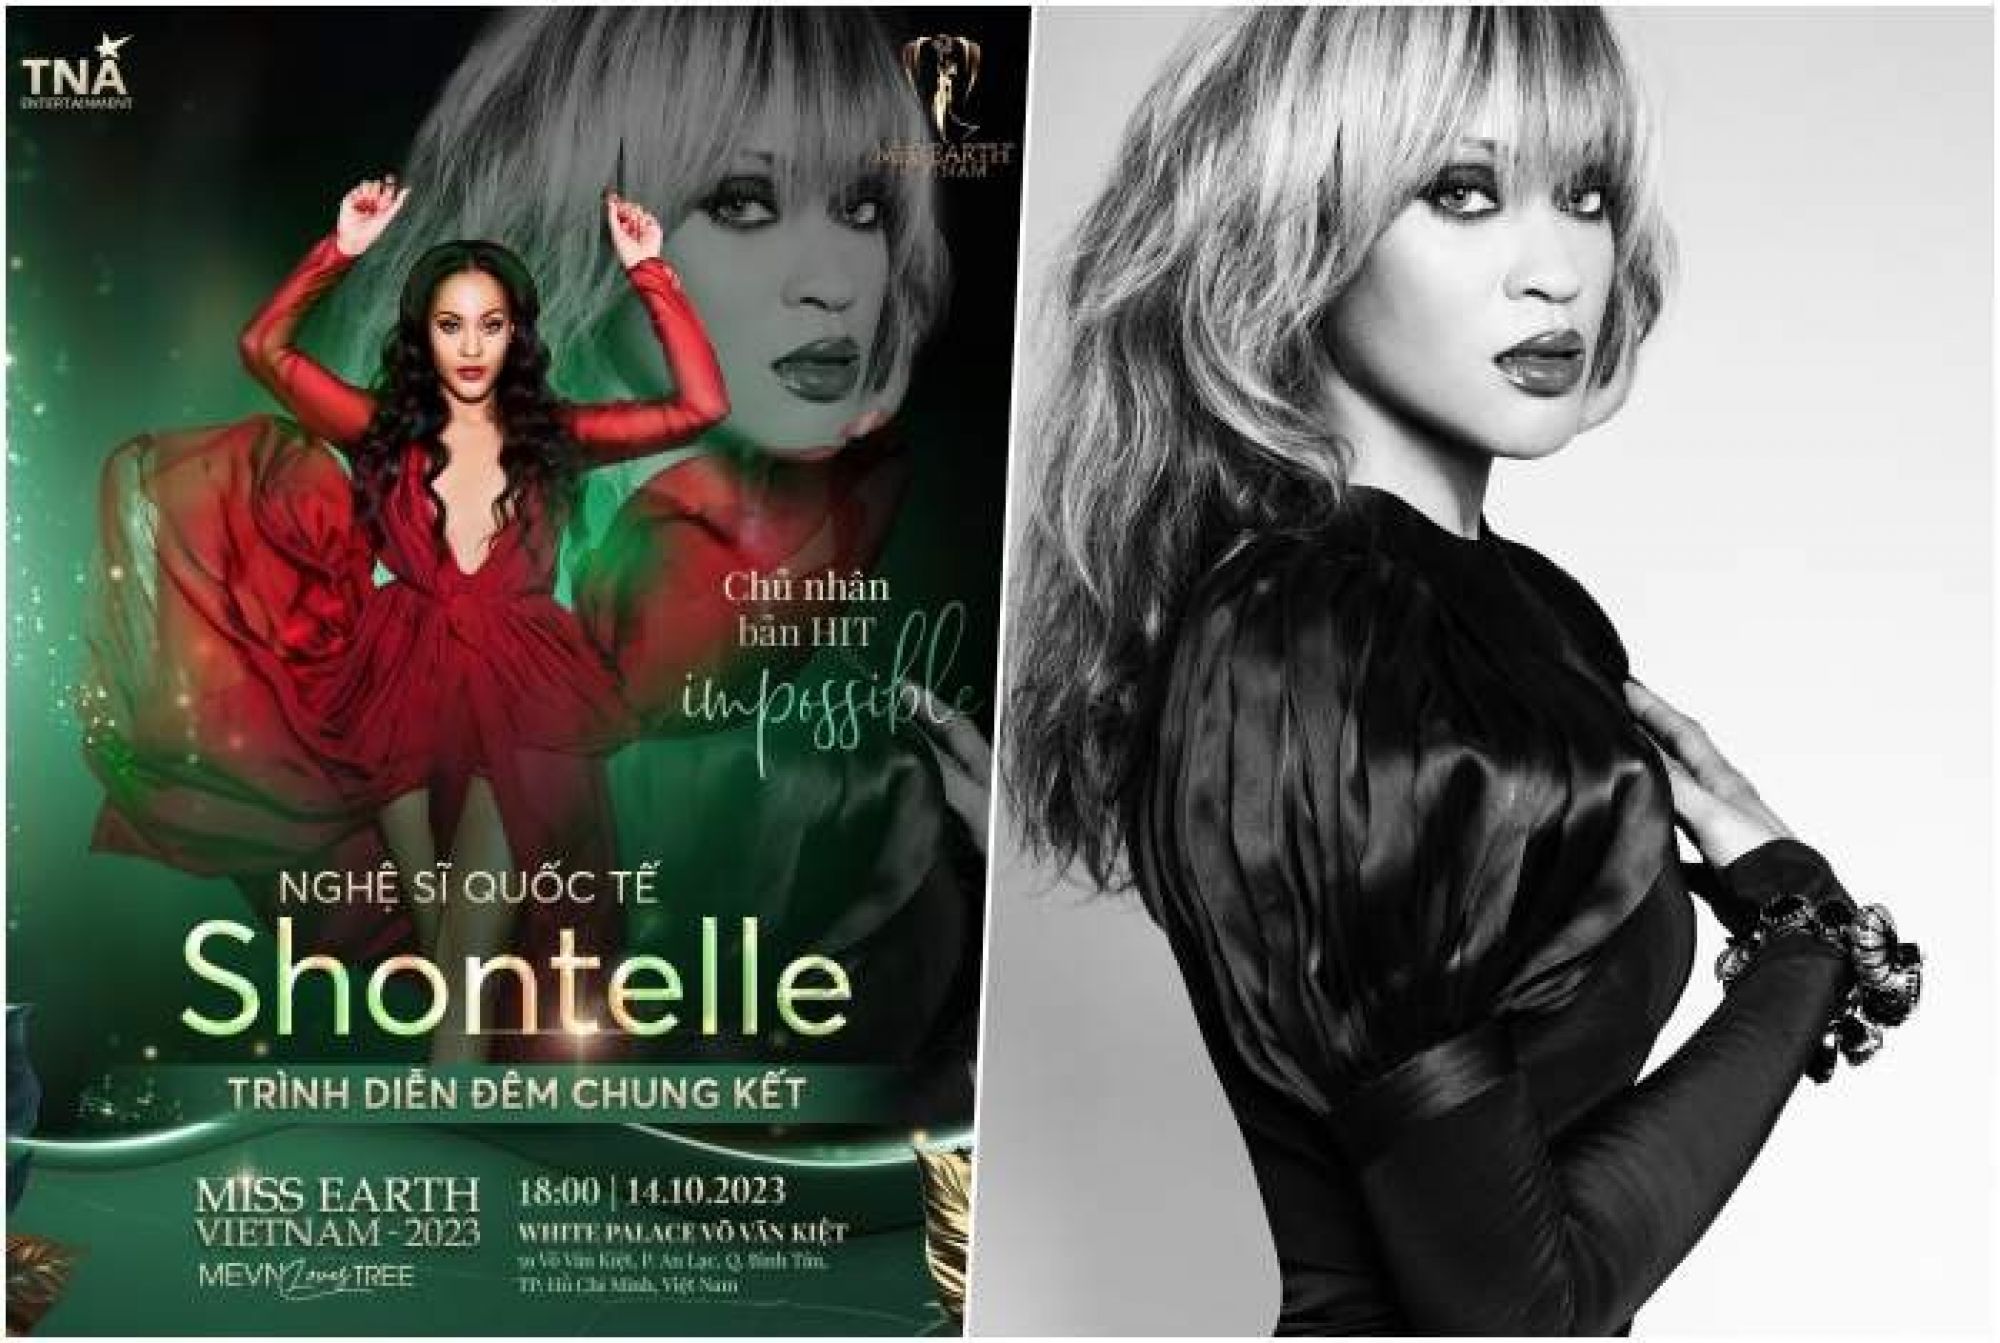 Shontelle - chủ nhân của bản hit “Impossible” sẽ khuấy đảo Đêm chung kết “Miss Earth Việt Nam 2023”